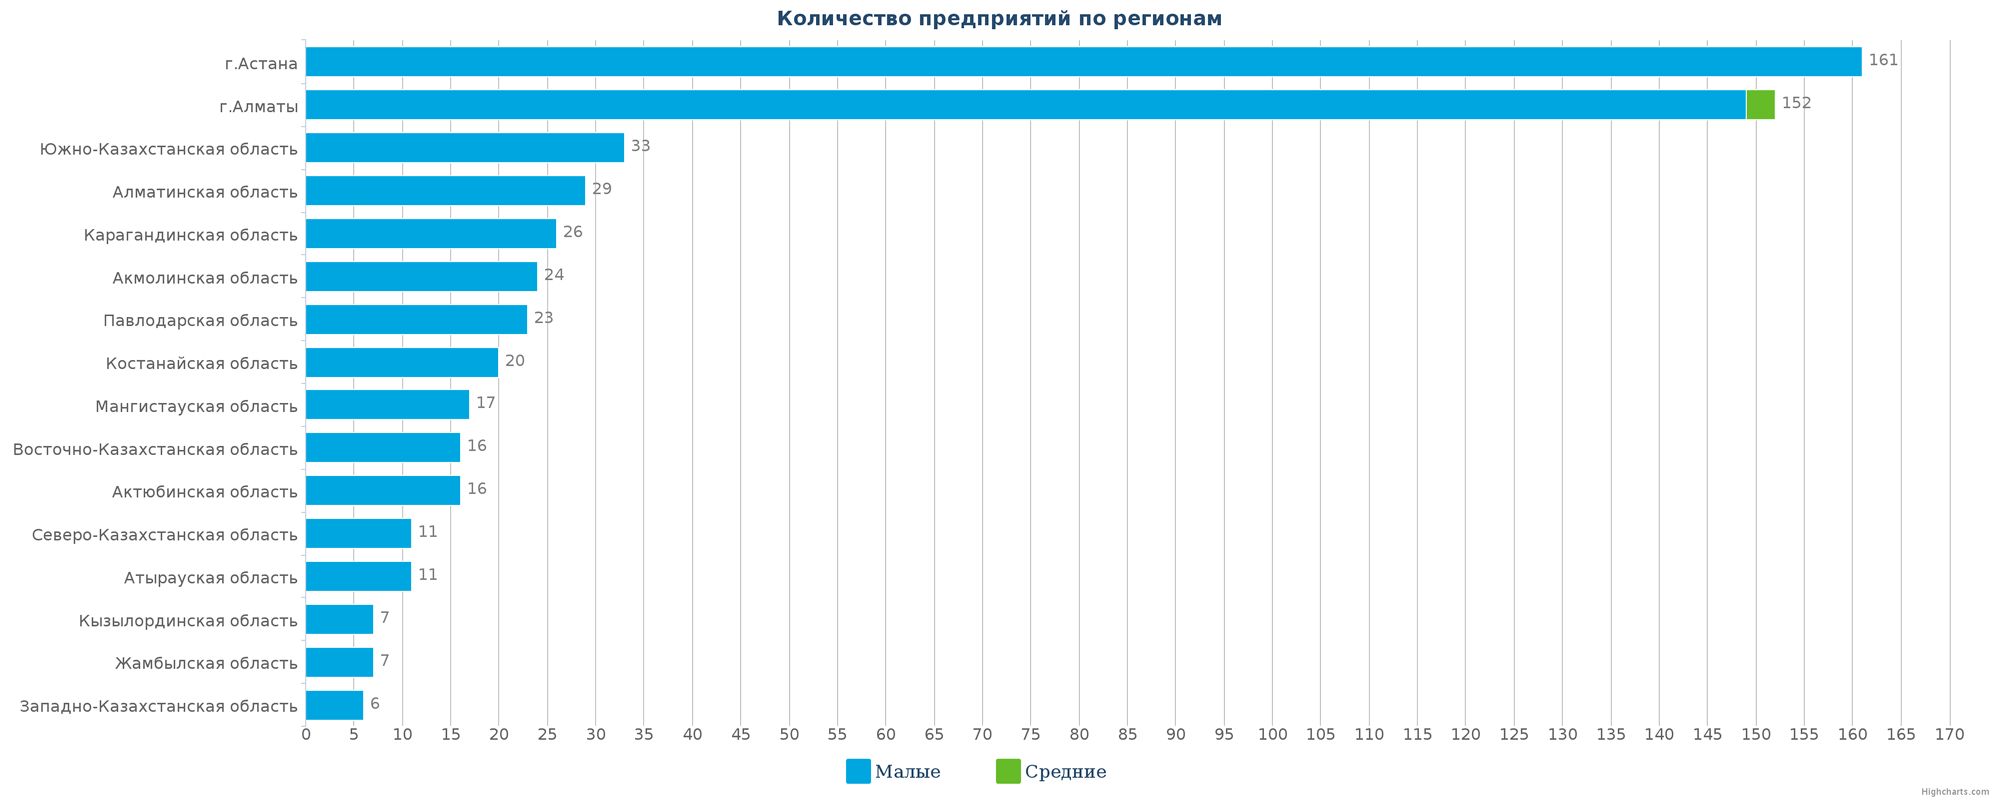 Количество новых компаний в справочнике по регионам Казахстана